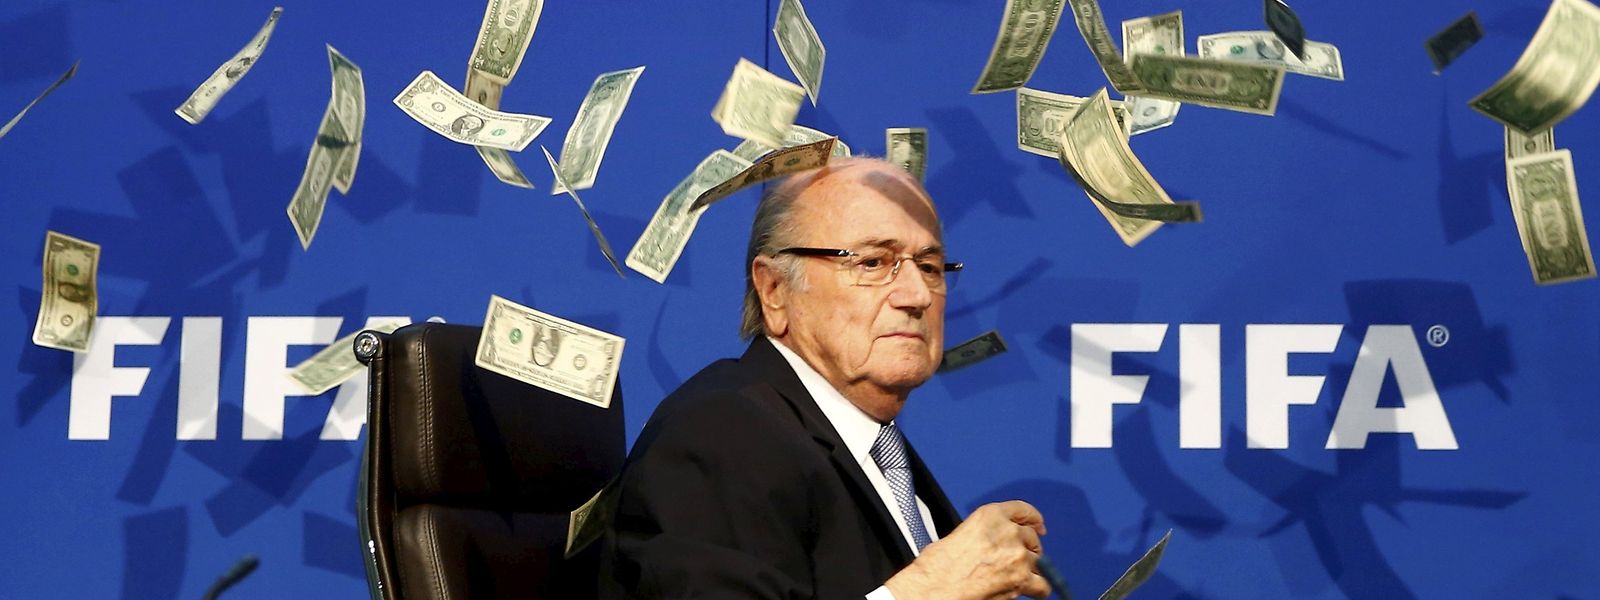 O comediante Simon Brodkin atirou um maço de notas ao presidente da FIFA, Sepp Blatter, para criticar a visão monetarista do organismo mundial do futebol.